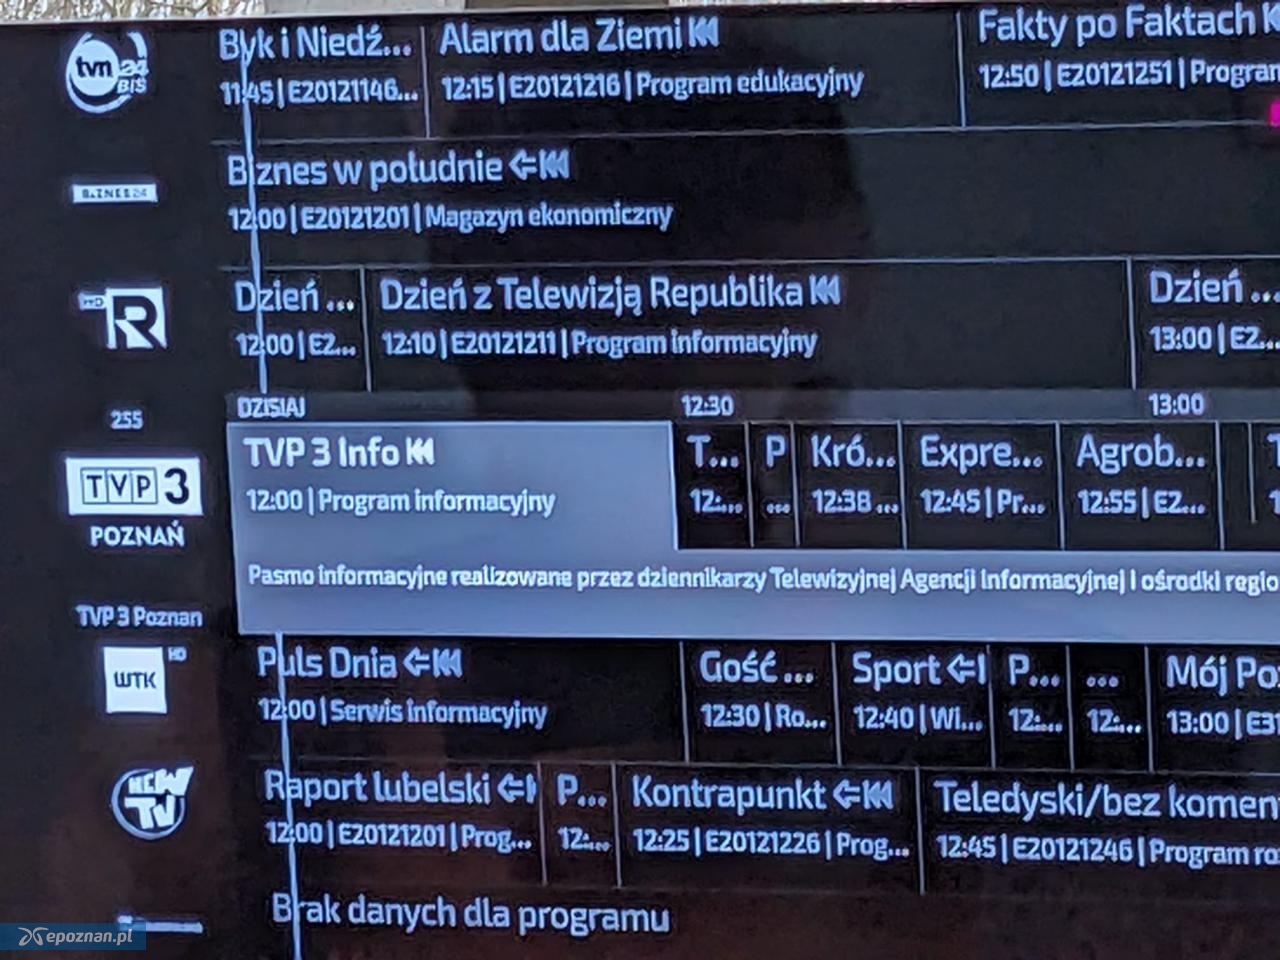 Zamiast planowanego programu informacyjnego na TVP 3 Poznań można zobaczyć serial